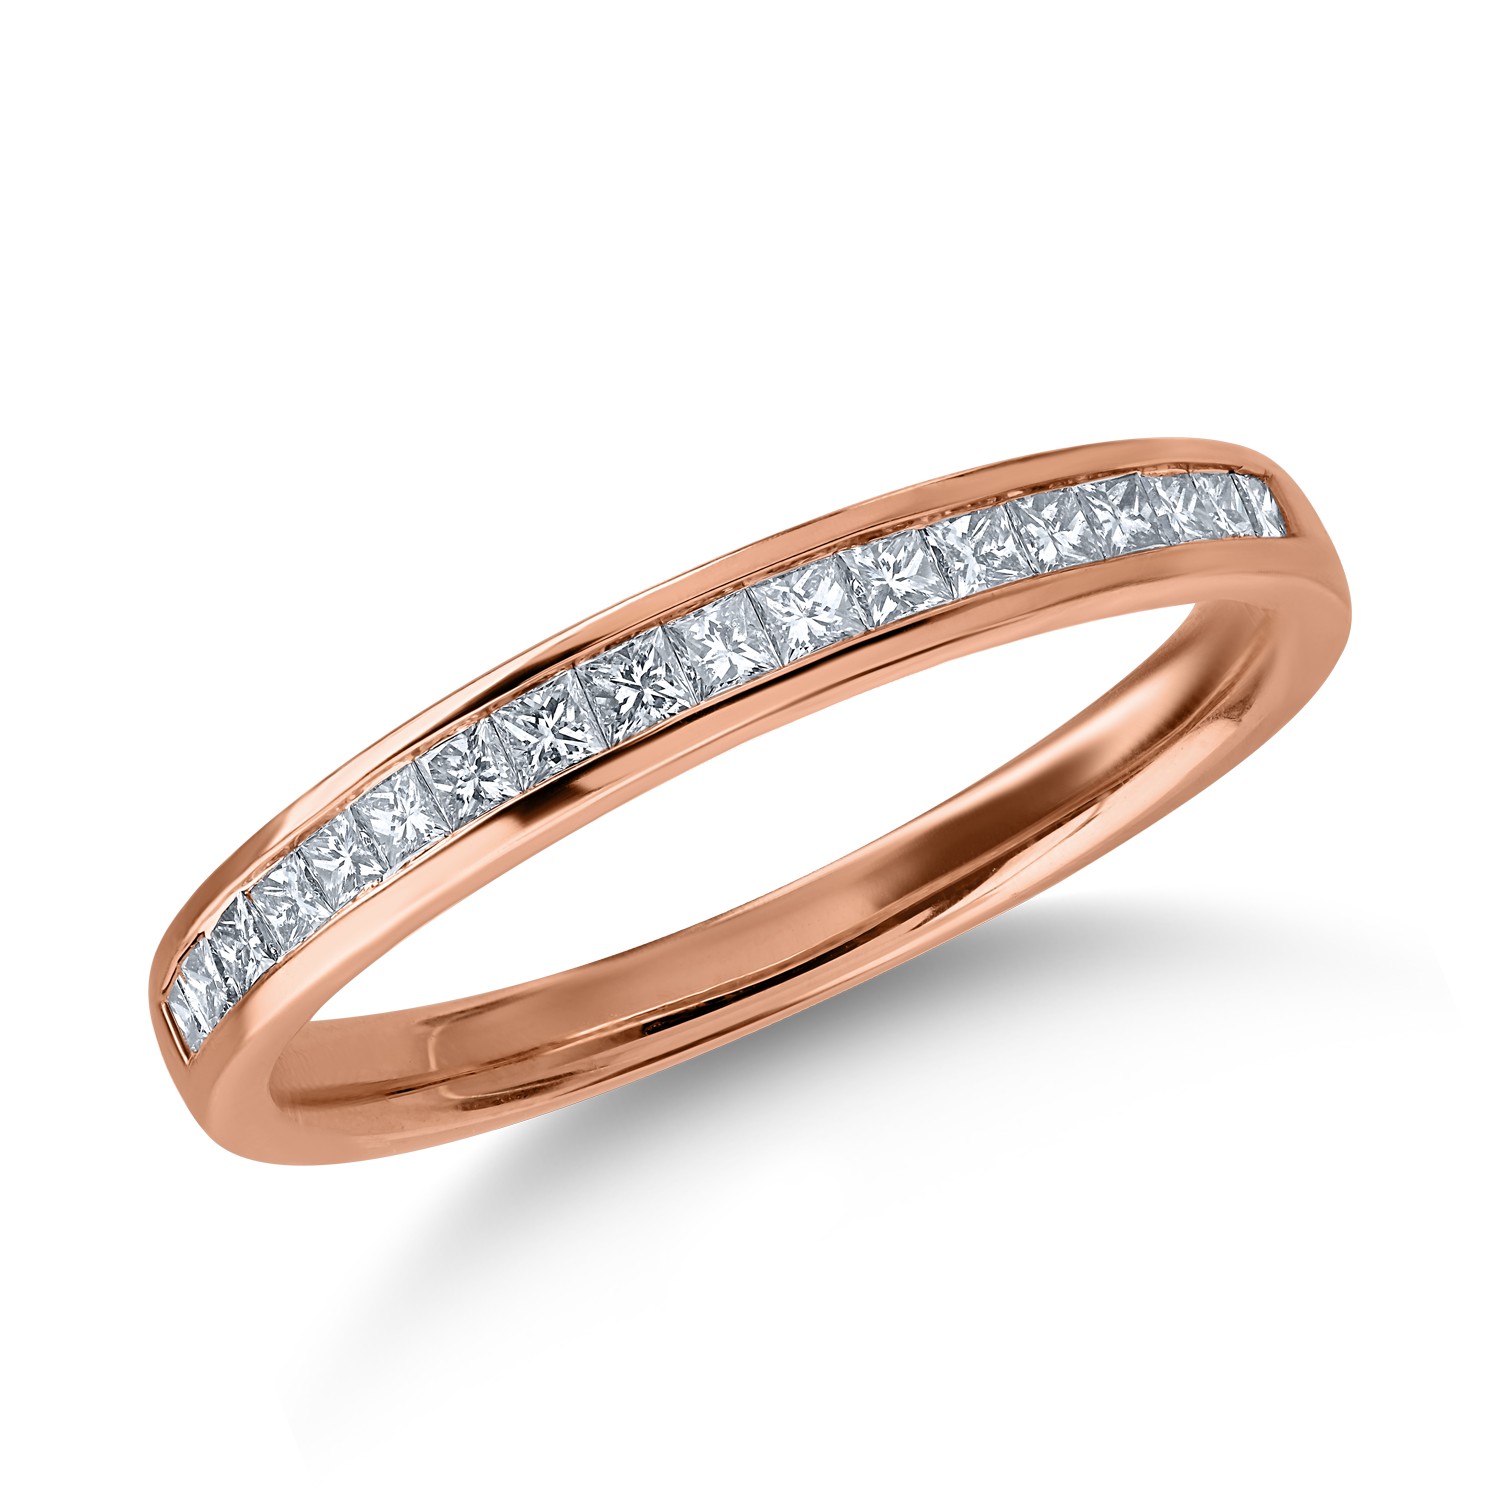 Fél örökkévalóság gyűrű rózsaszín aranyból. 0.36ct gyémántokkal